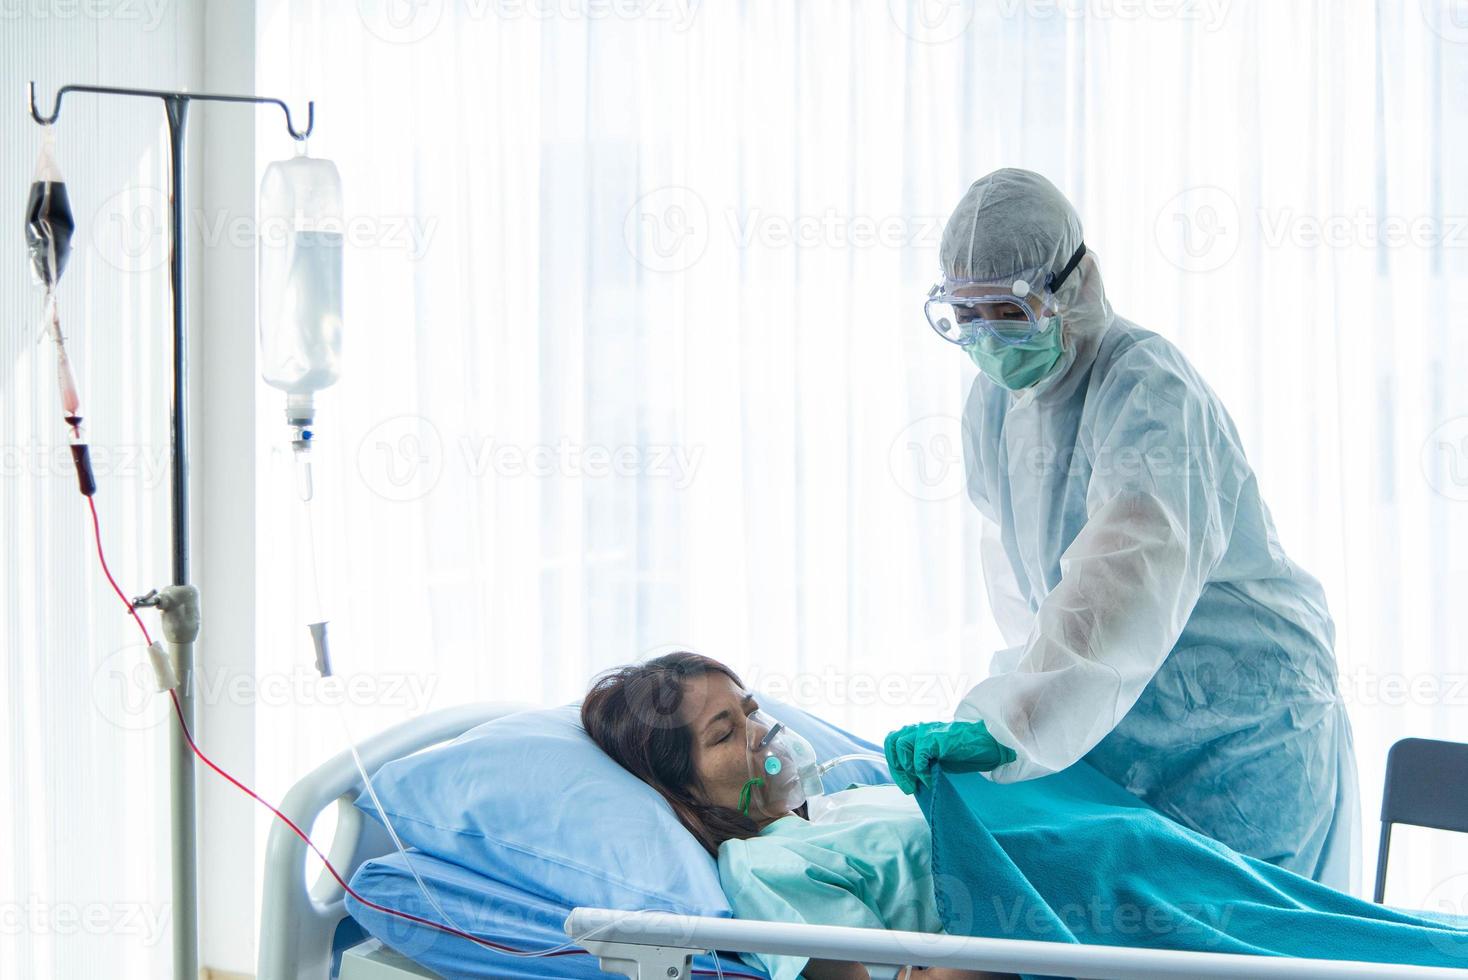 artsen in beschermend pak die de patiënt behandelen die besmet is met corona visrus of covid-19, bevindt zich in quarantainekamer in het ziekenhuis. foto